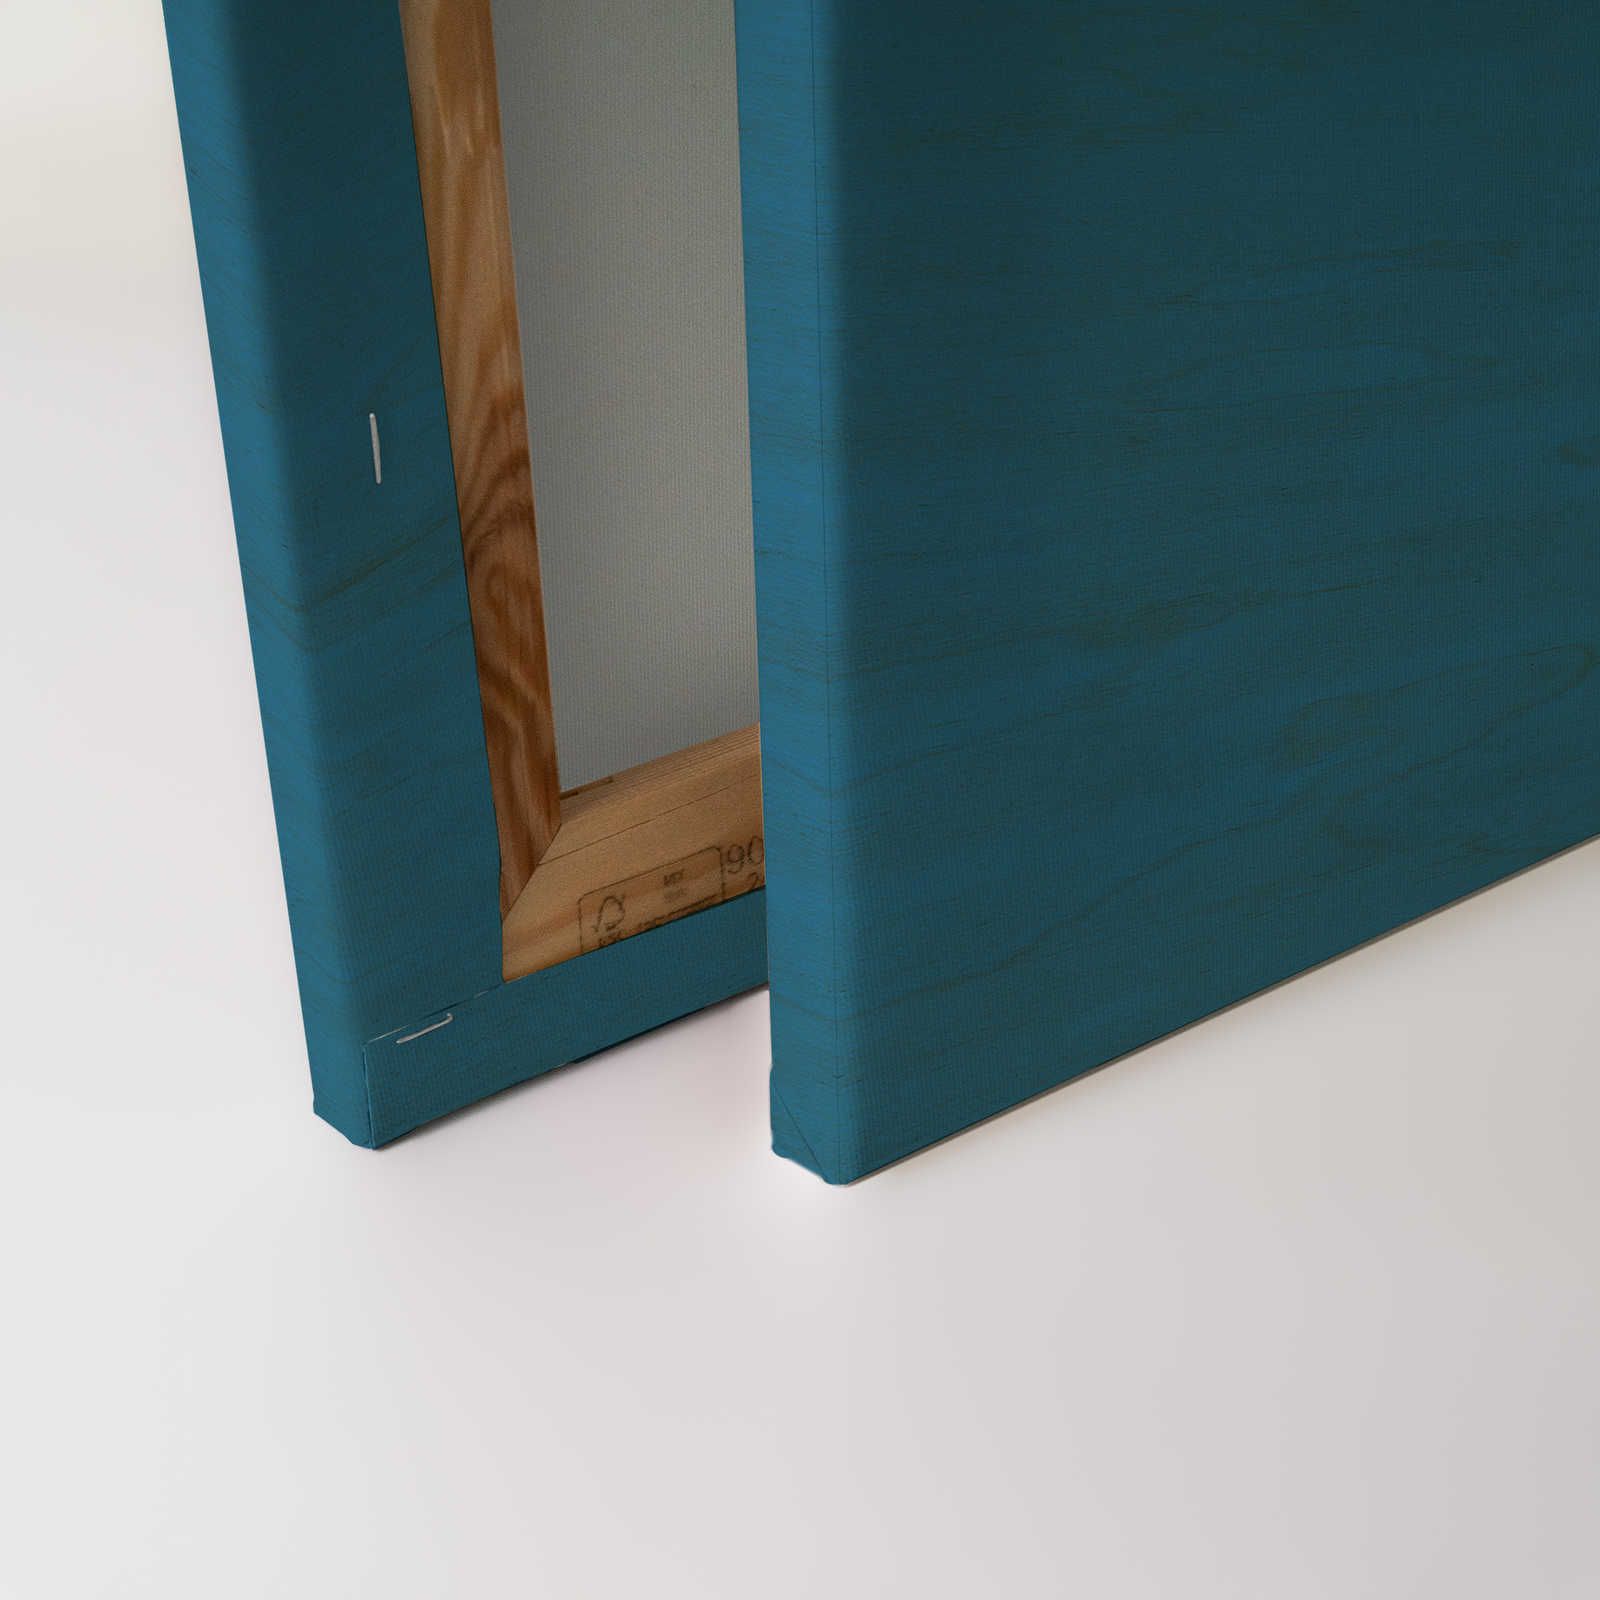             Oltremare 3 - Quadro su tela blu Ethno Design con maschera - 0,90 m x 0,60 m
        